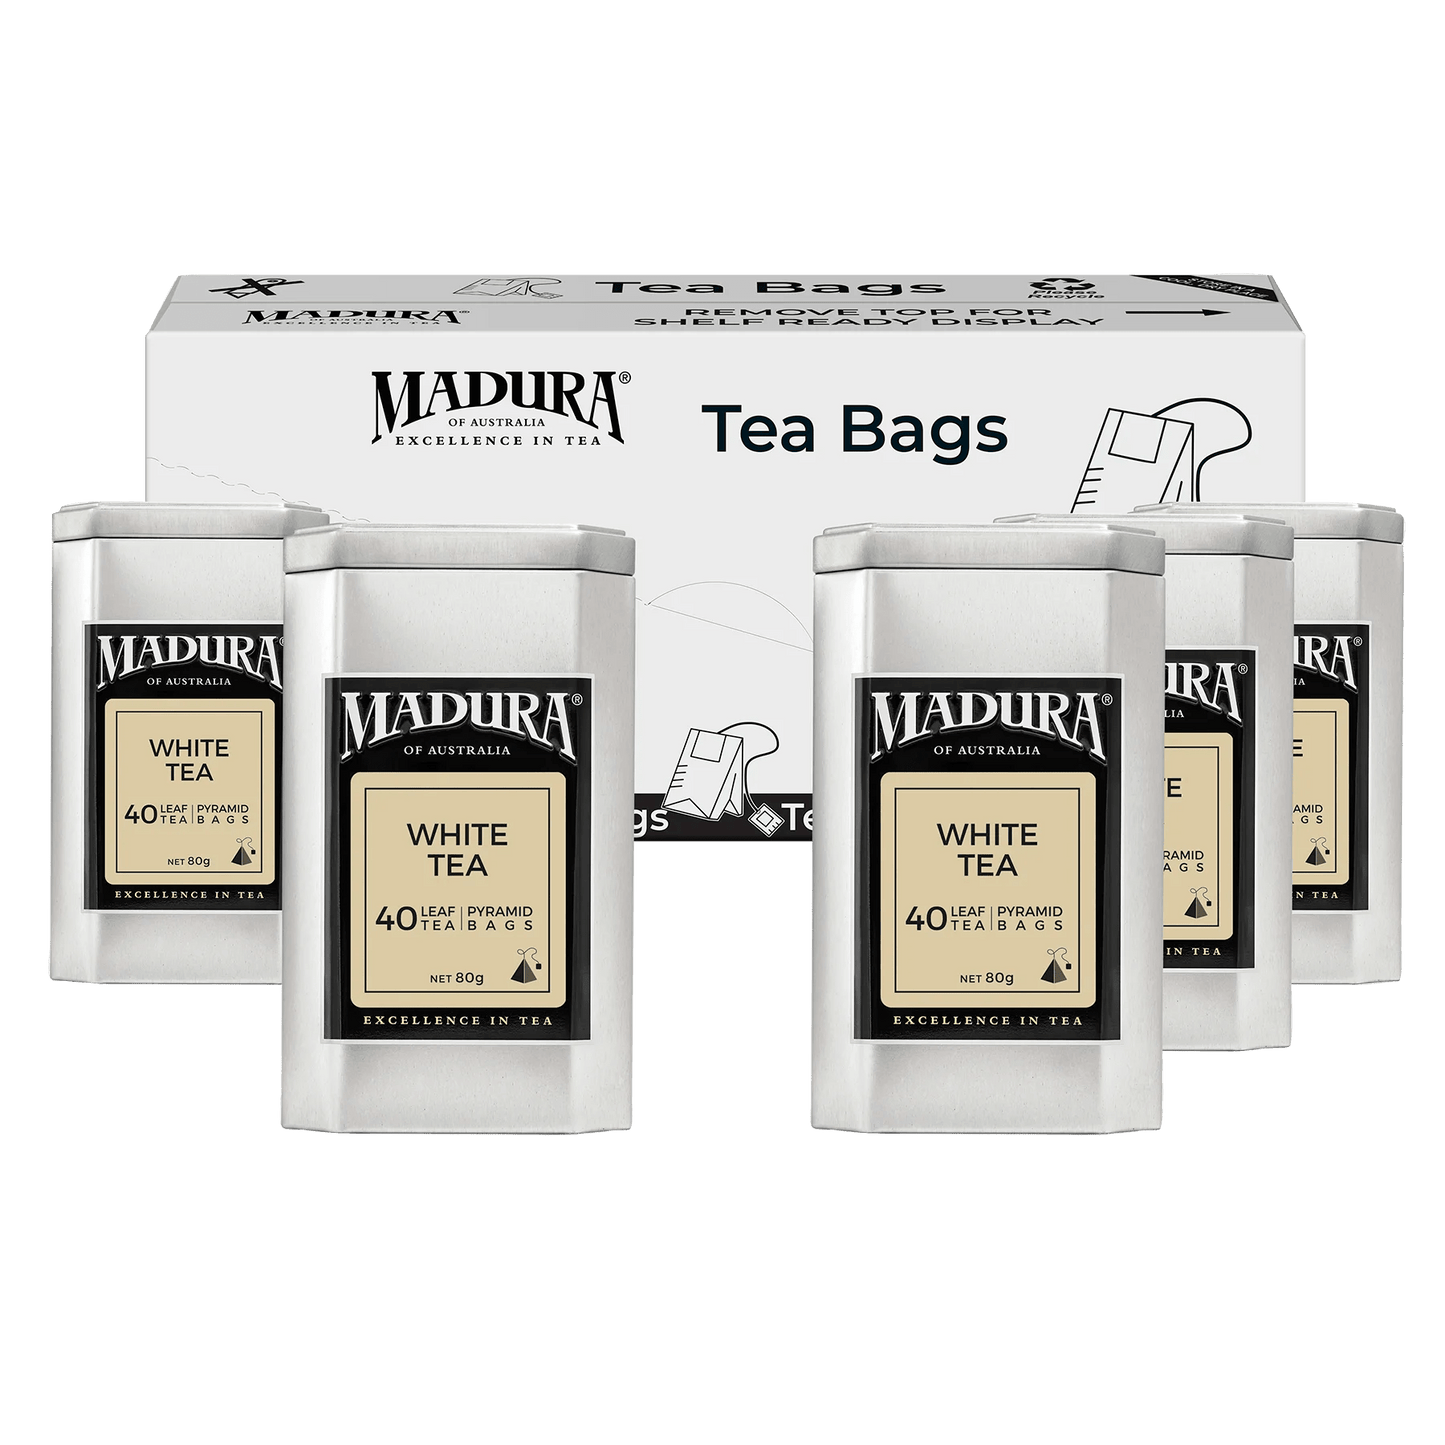 White Tea 40 Leaf Infusers in Caddy - Madura Tea